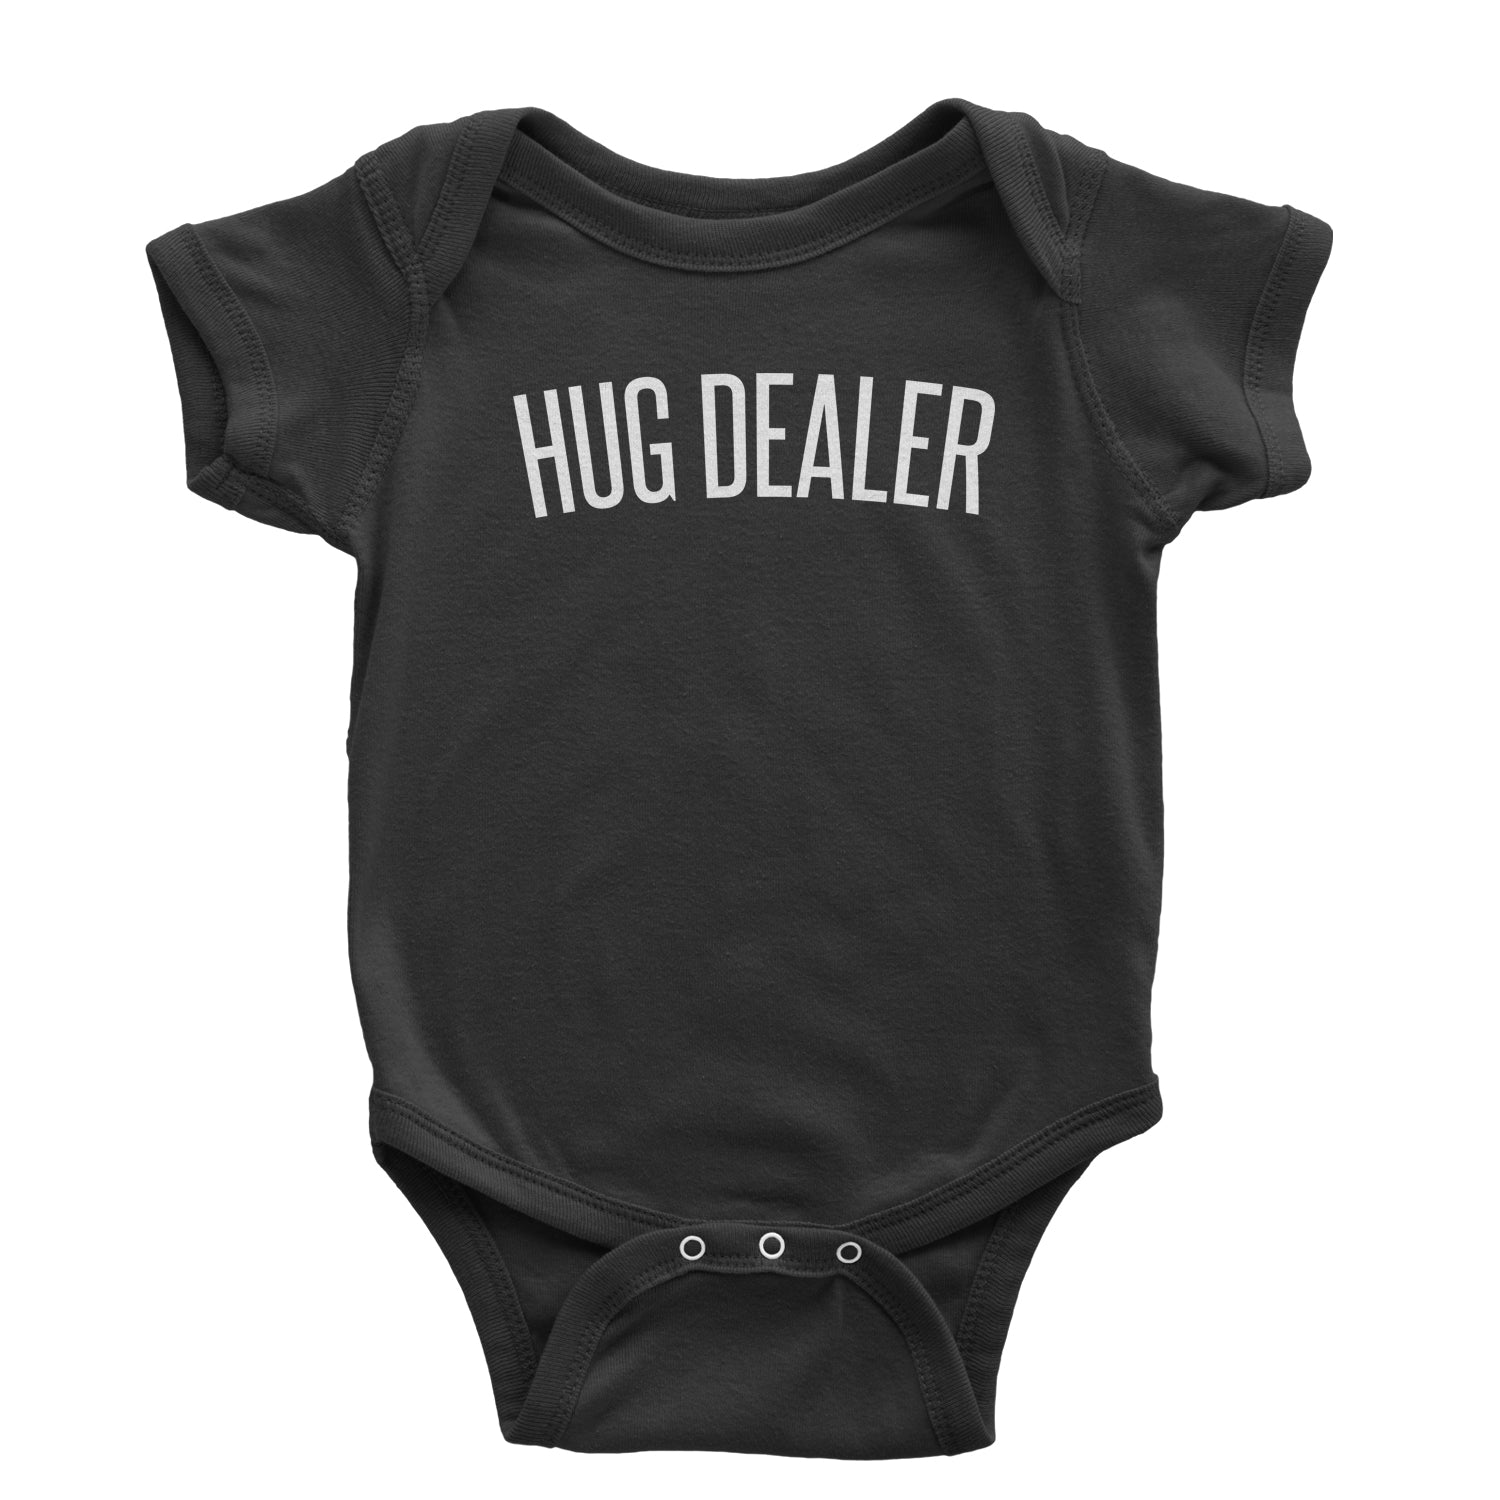 Hug Dealer Infant One-Piece Romper Bodysuit dealing, free, hug, hugger, hugs by Expression Tees